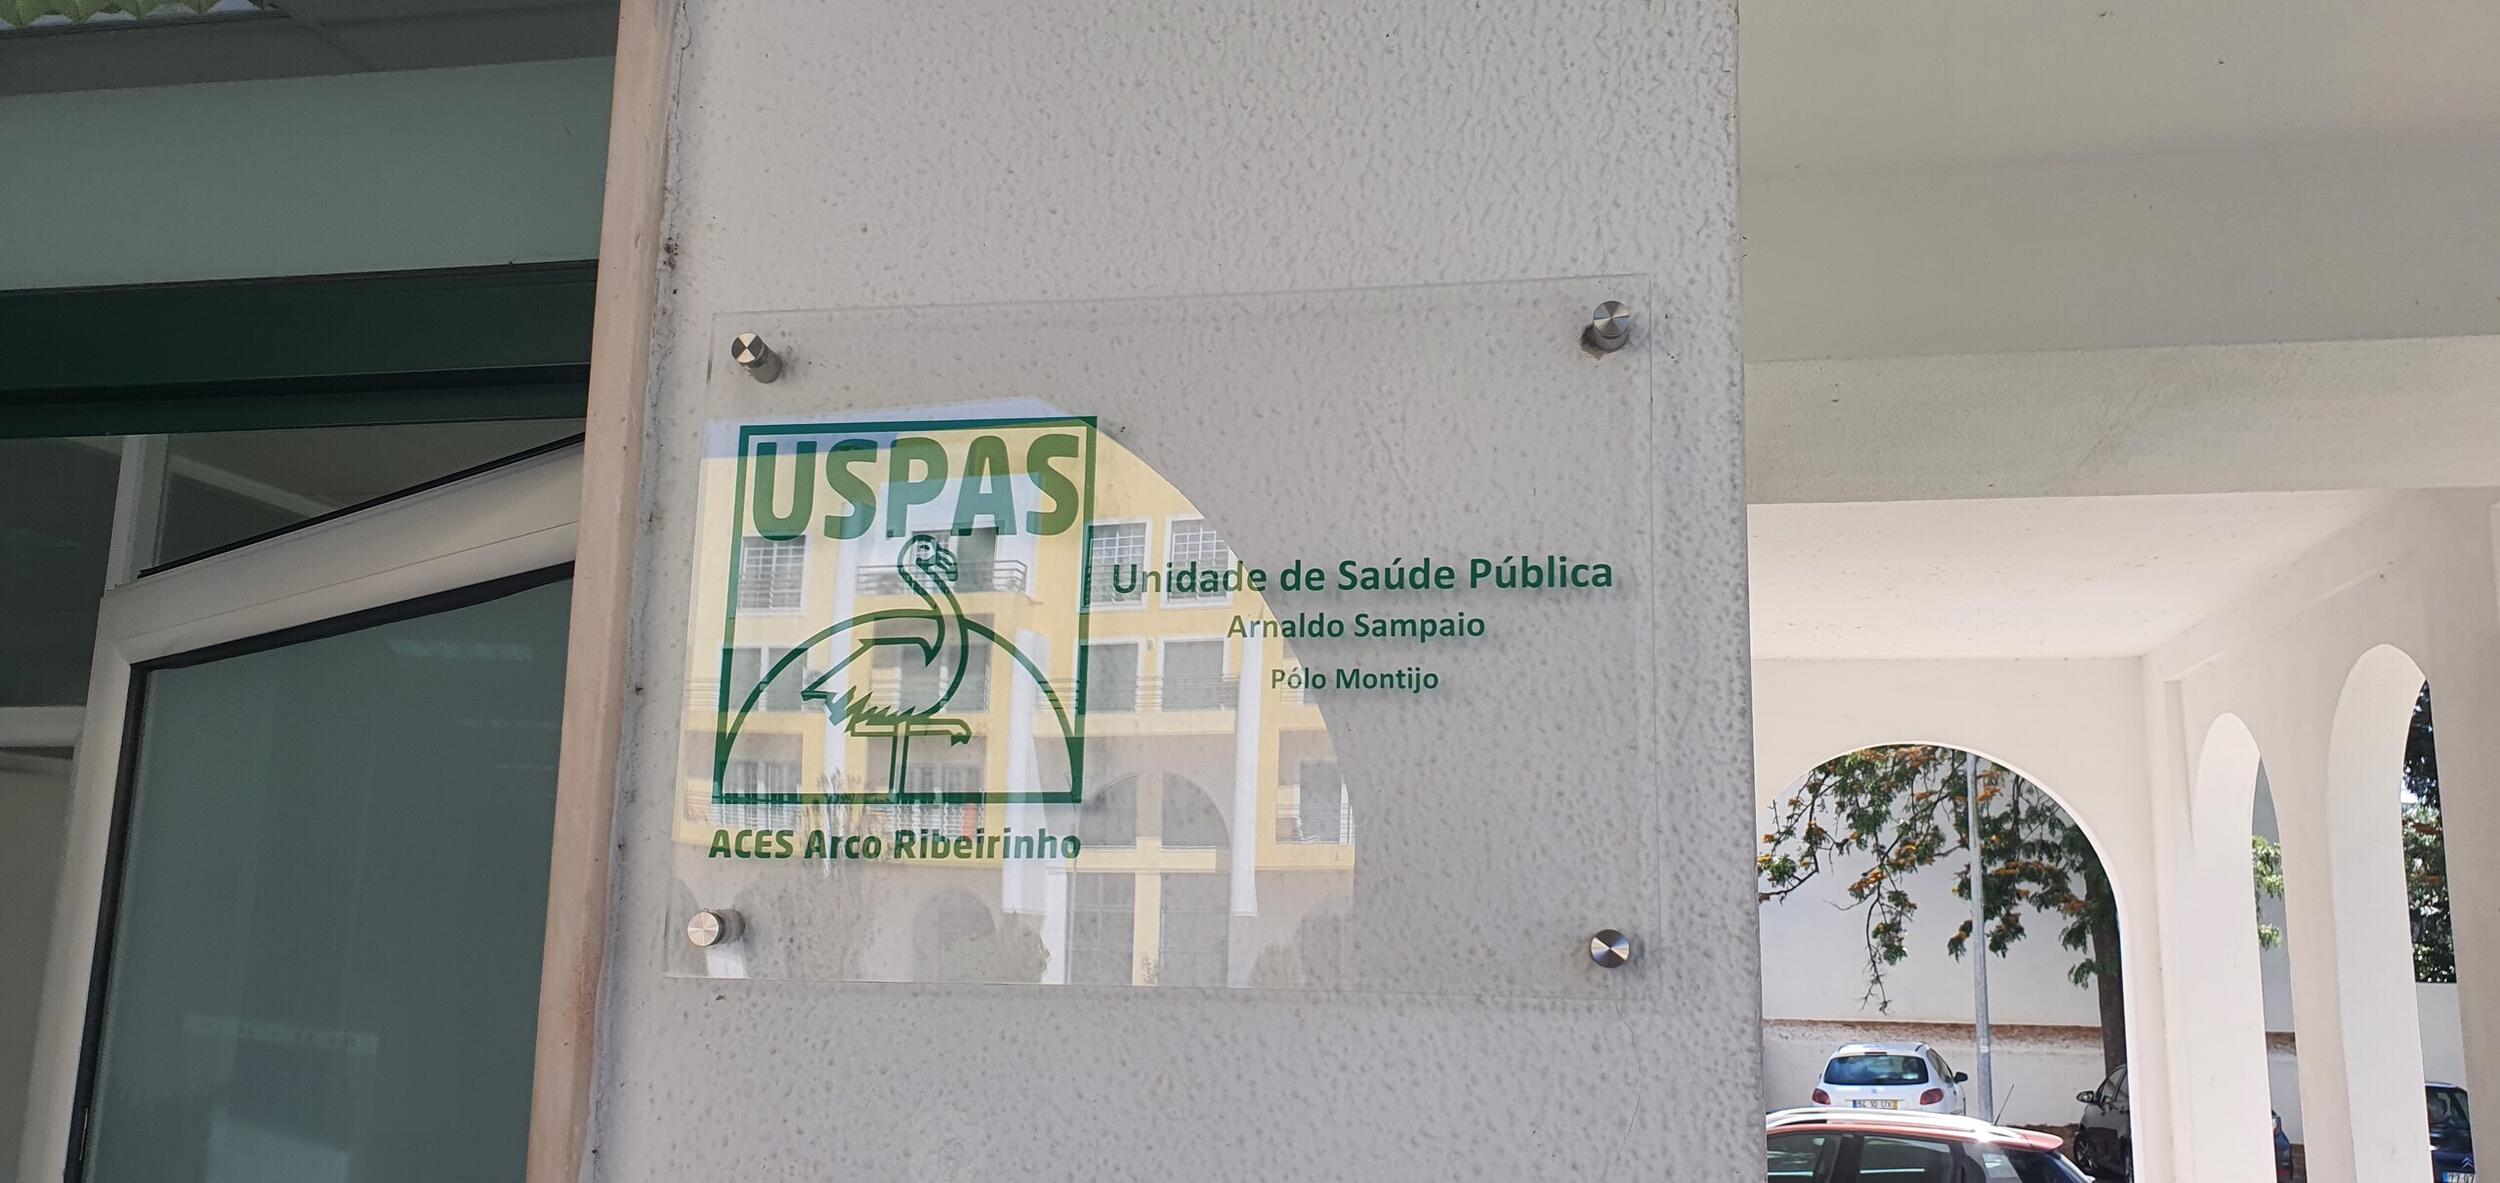 Unidade de Saúde Pública Arnaldo Sampaio está na praceta do Páteo d’Água